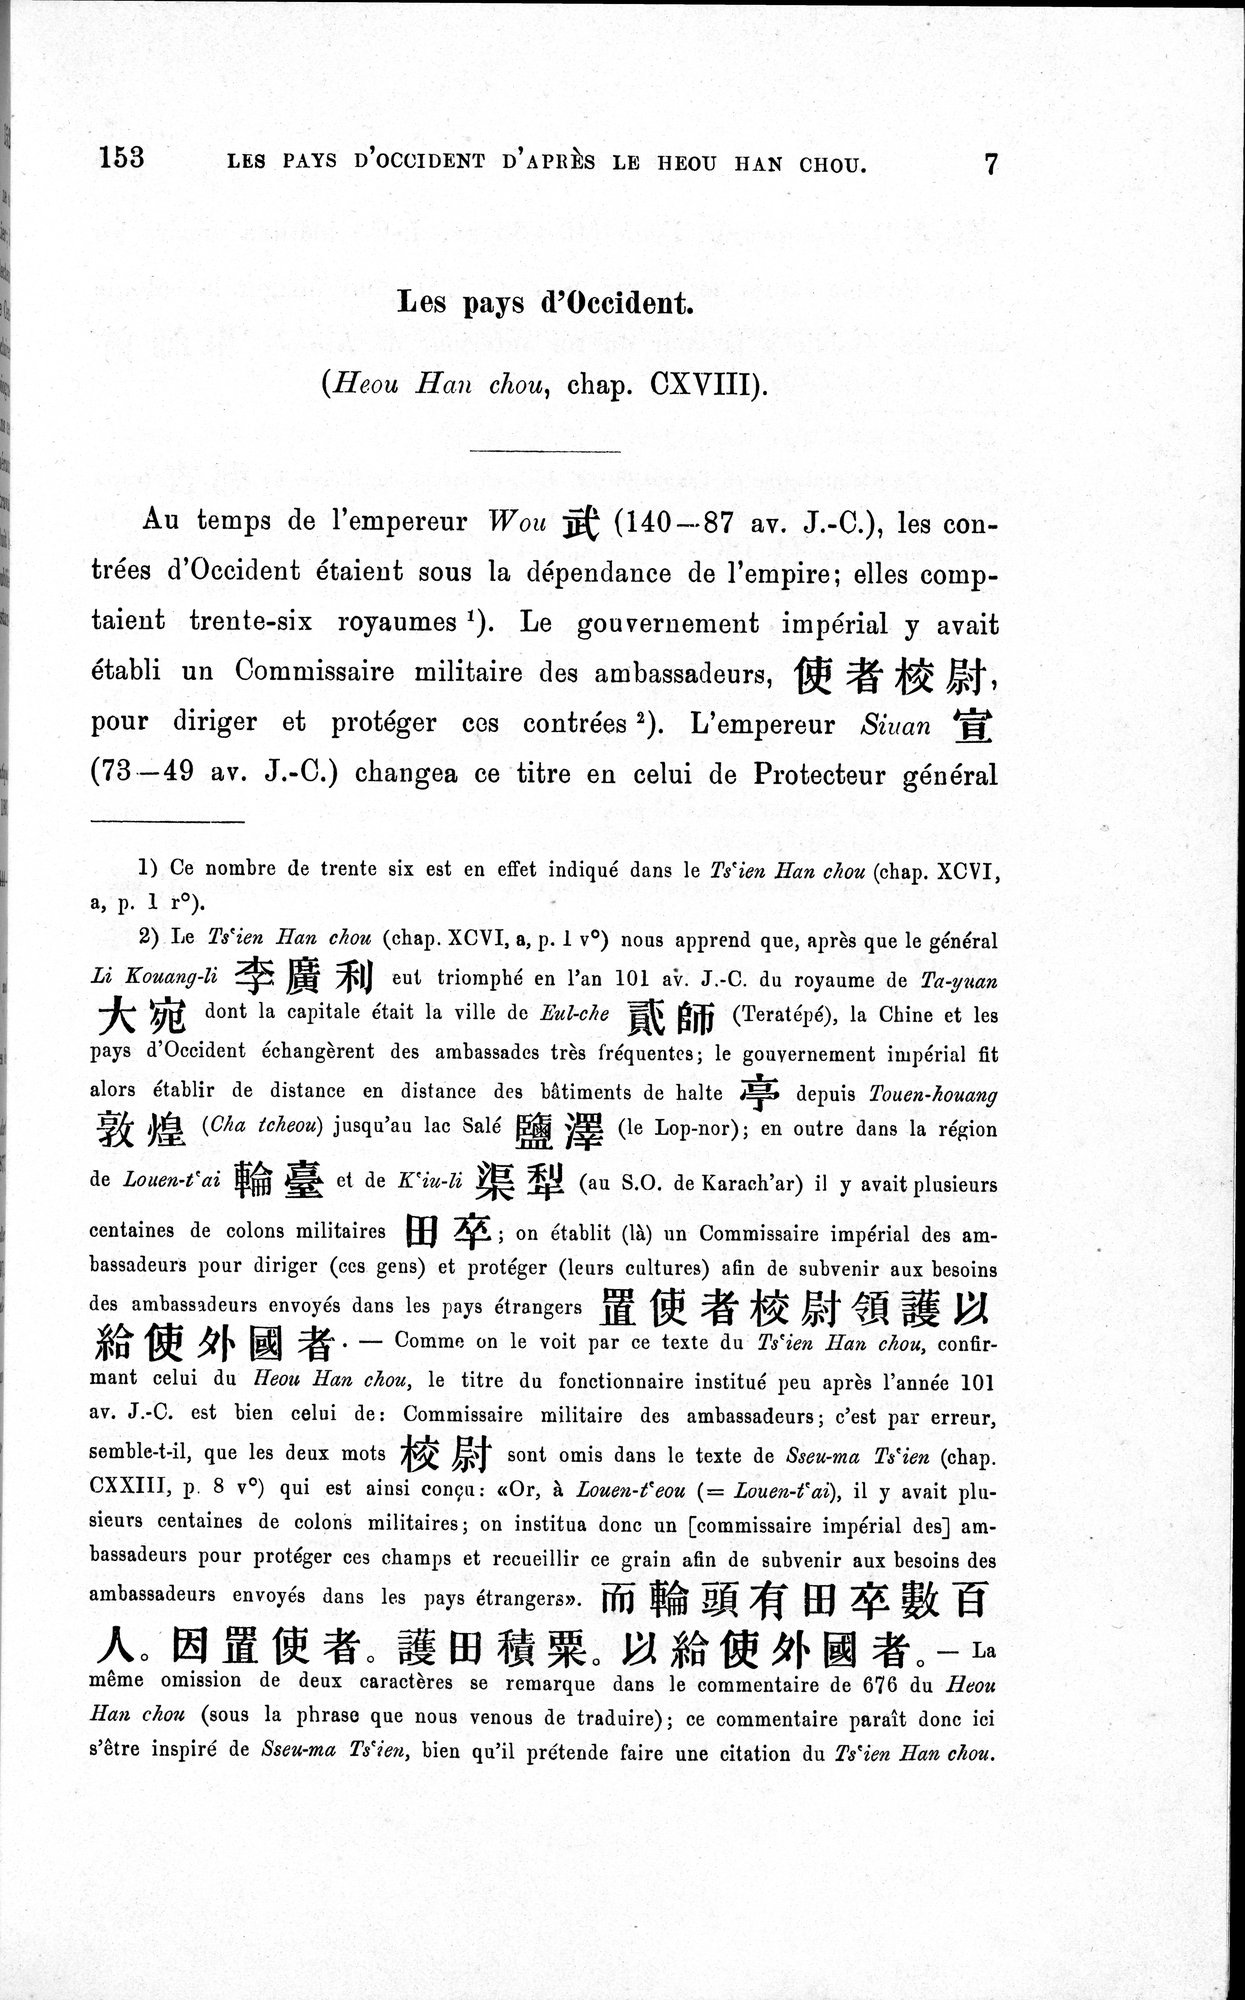 Les pays d'Occident d'après le Heou Han Chou : vol.1 / Page 15 (Grayscale High Resolution Image)